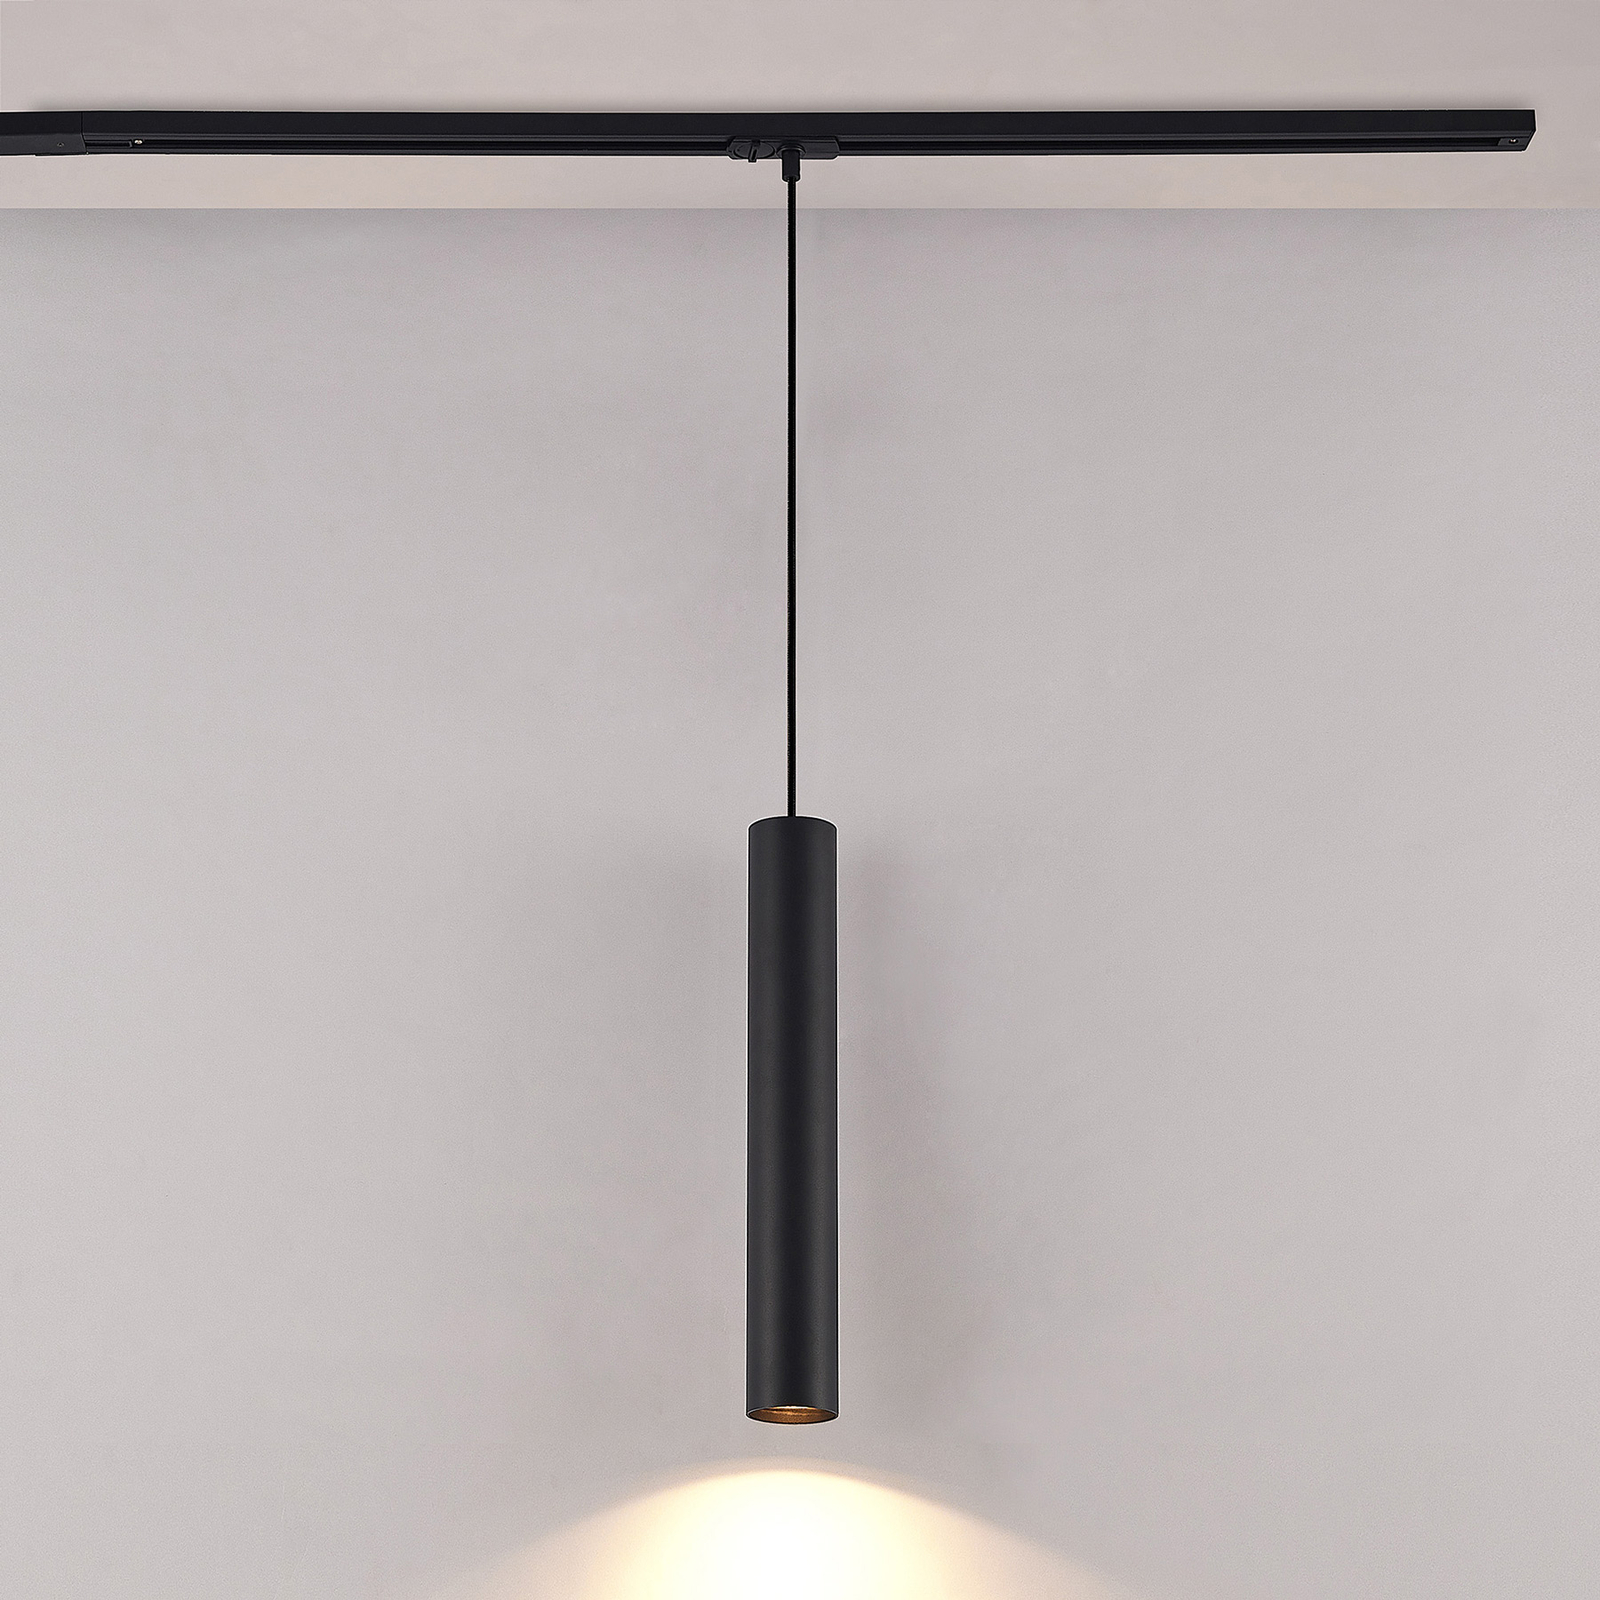 Lampa wisząca Lindby Linaro, 40 cm, czarna, 1-fazowa, Ø 6 cm